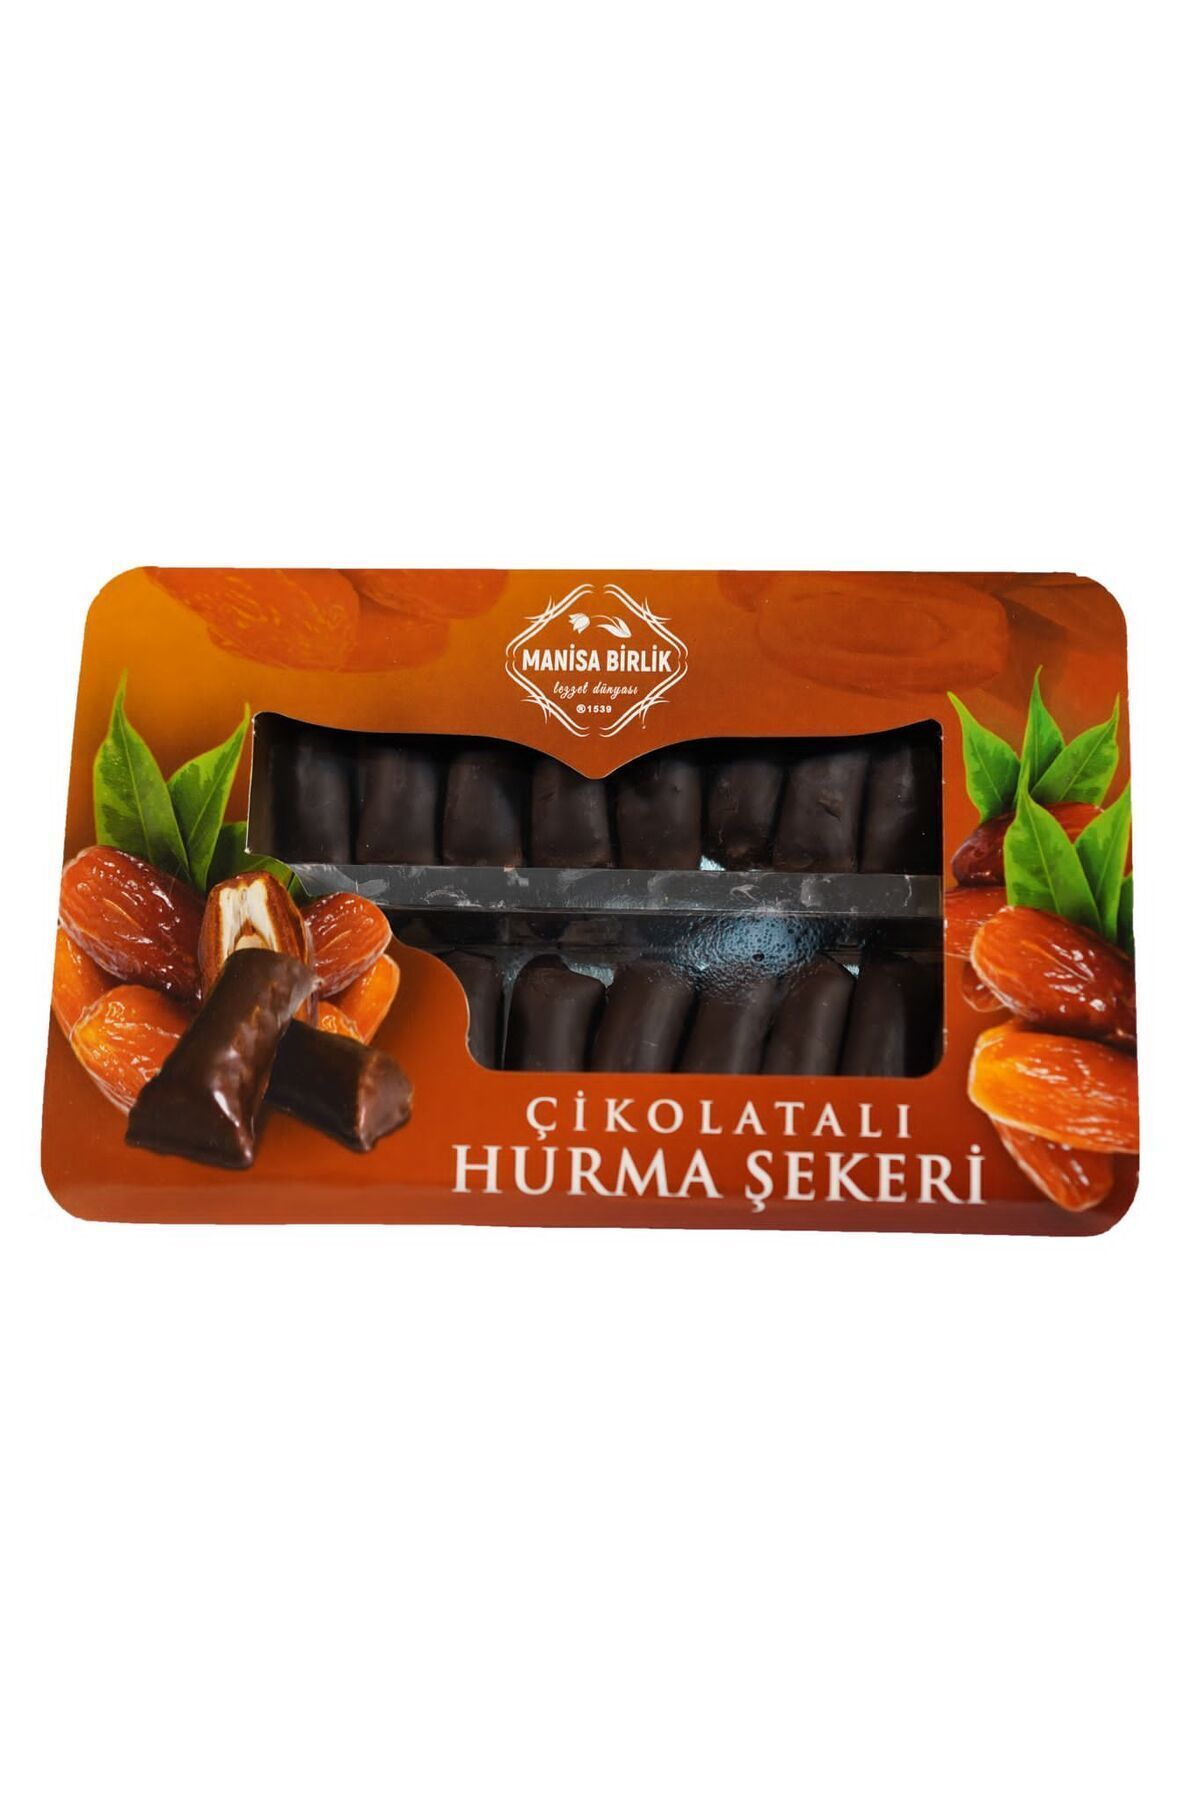 MANİSA BİRLİK Manisa Birlik Çikolatalı Hurma Şekeri 250 Gr 1 Paket